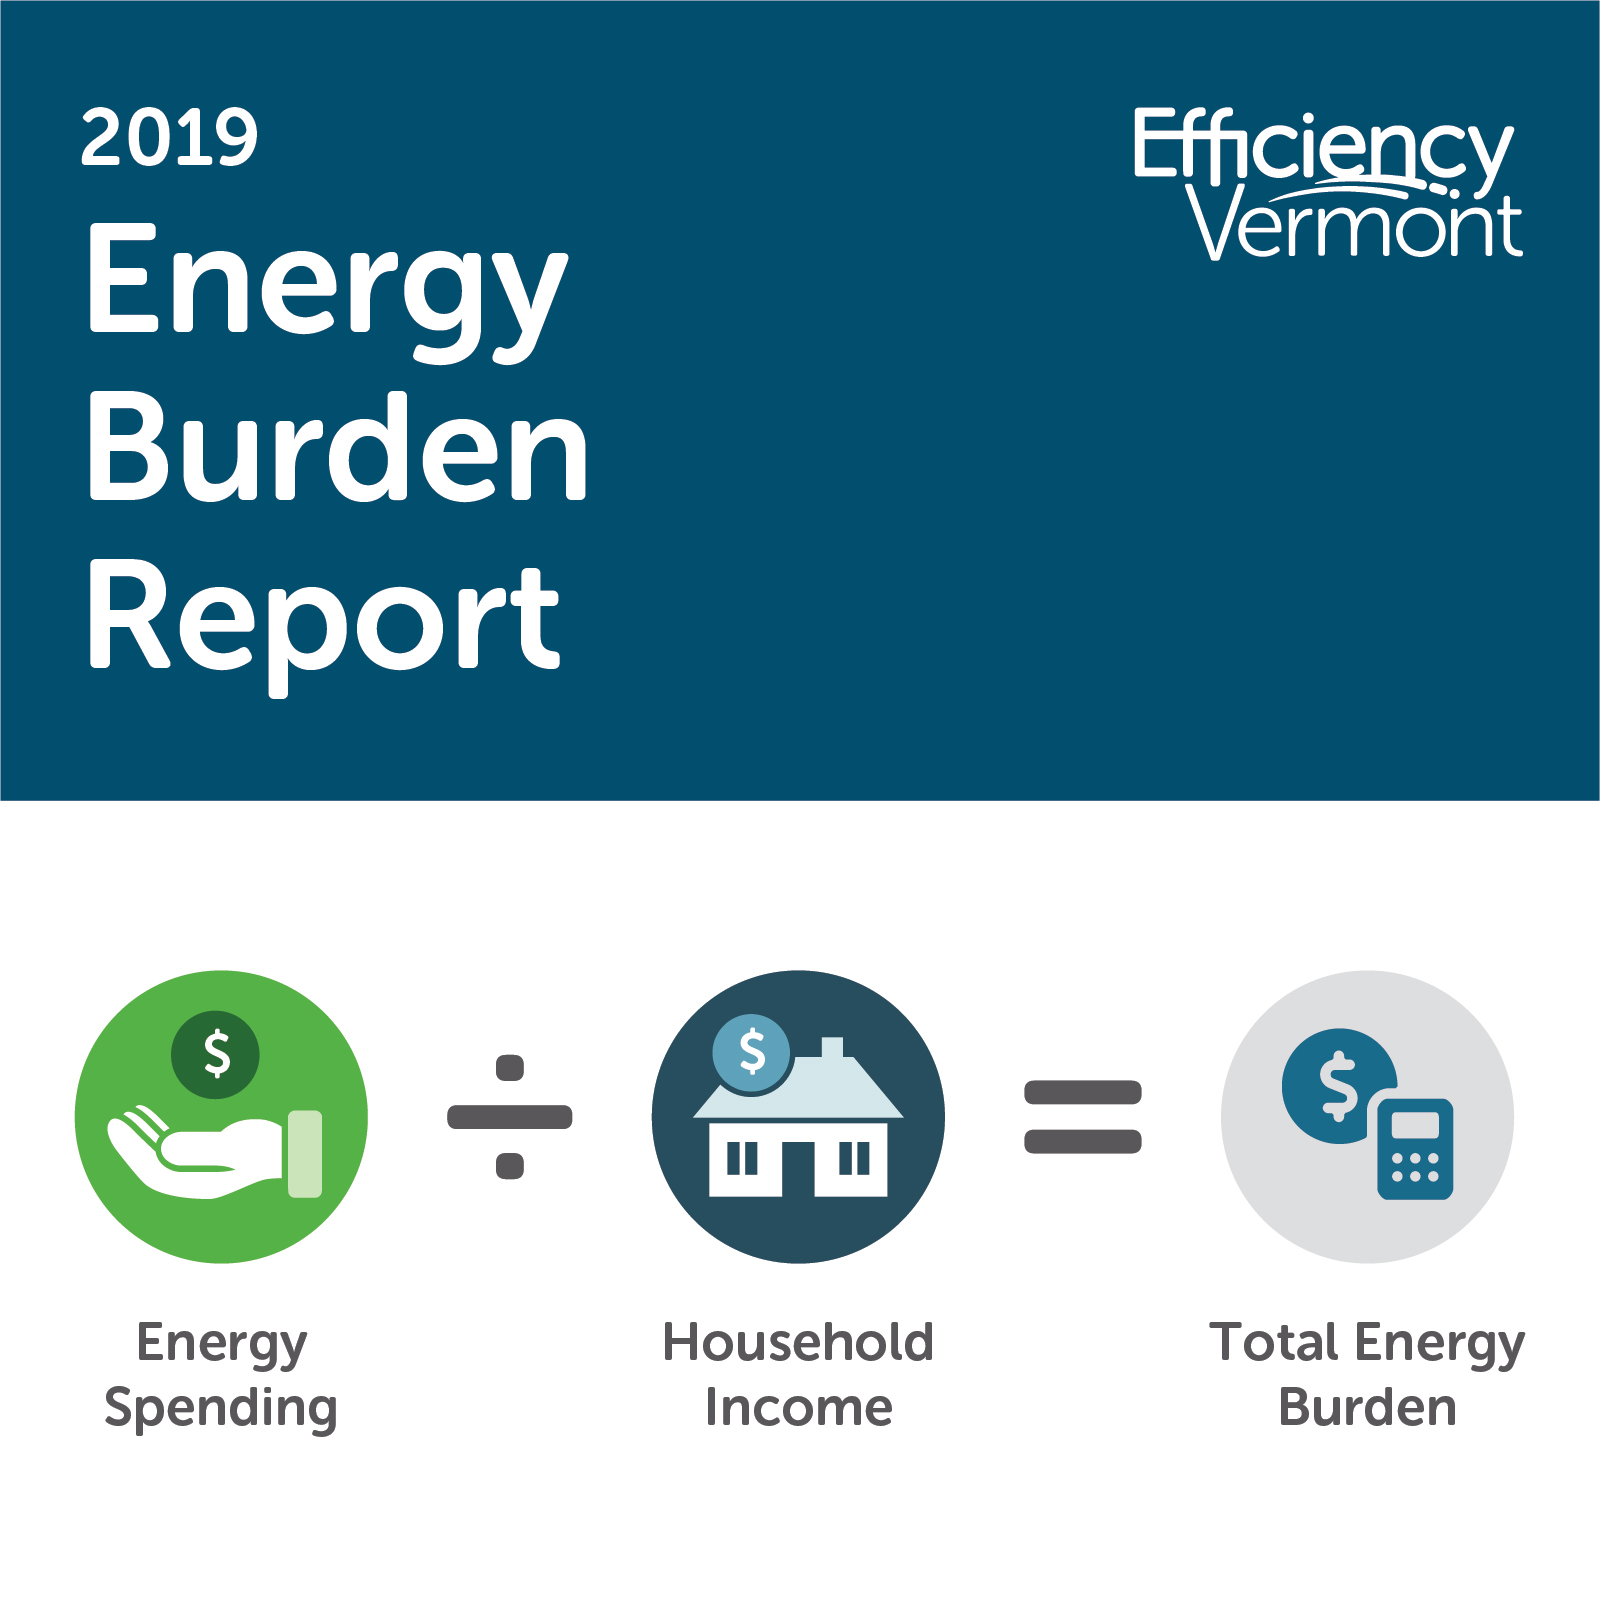 Efficiency Vermont's 2019 Energy Burden Report